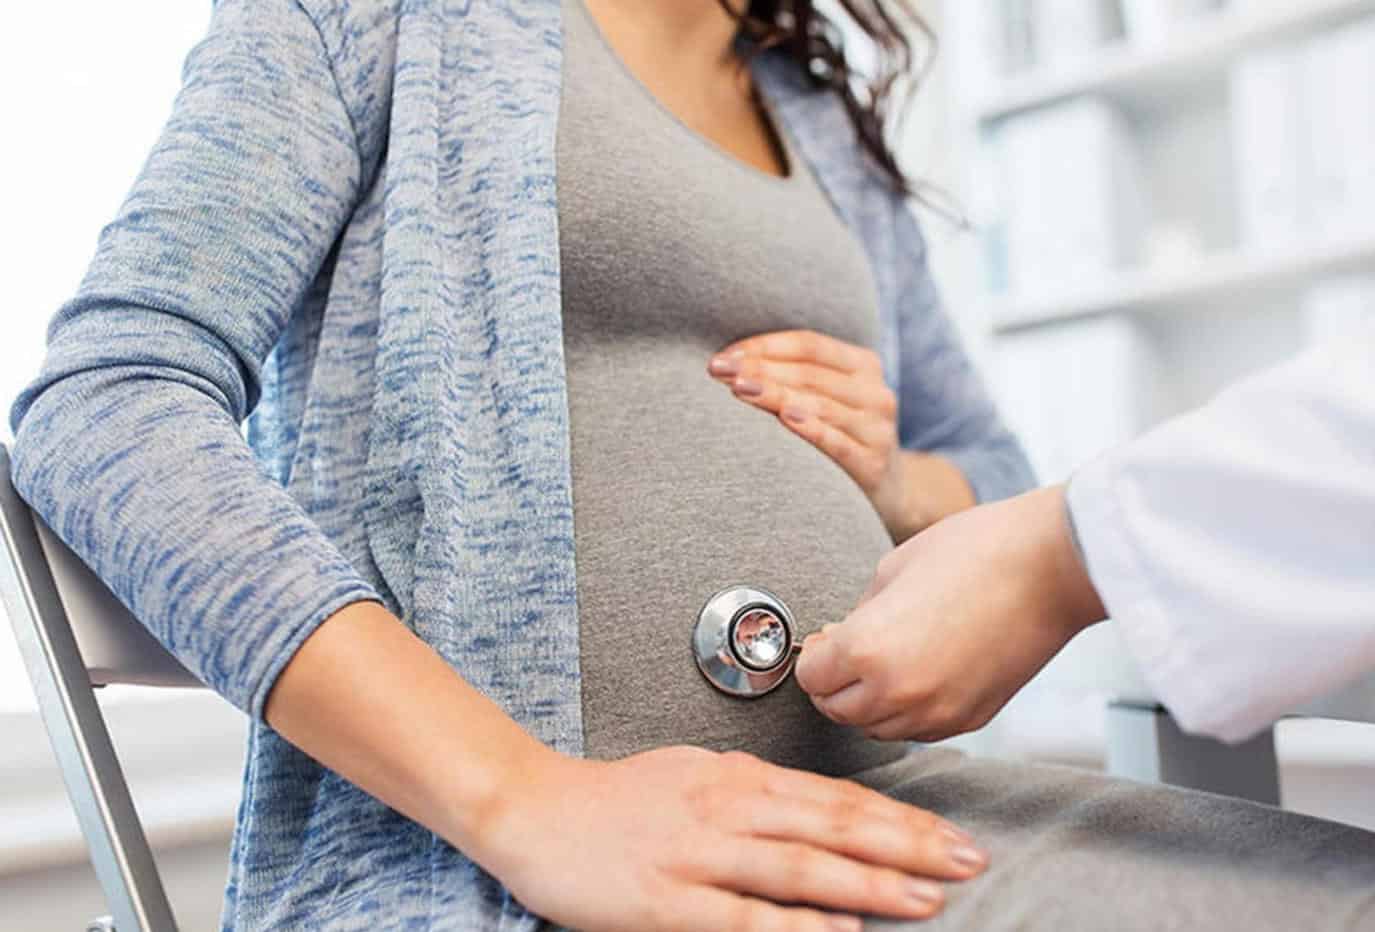 مخاطر حمل الأشياء الثقيلة للحامل. .. هل يسبب الإجهاض؟